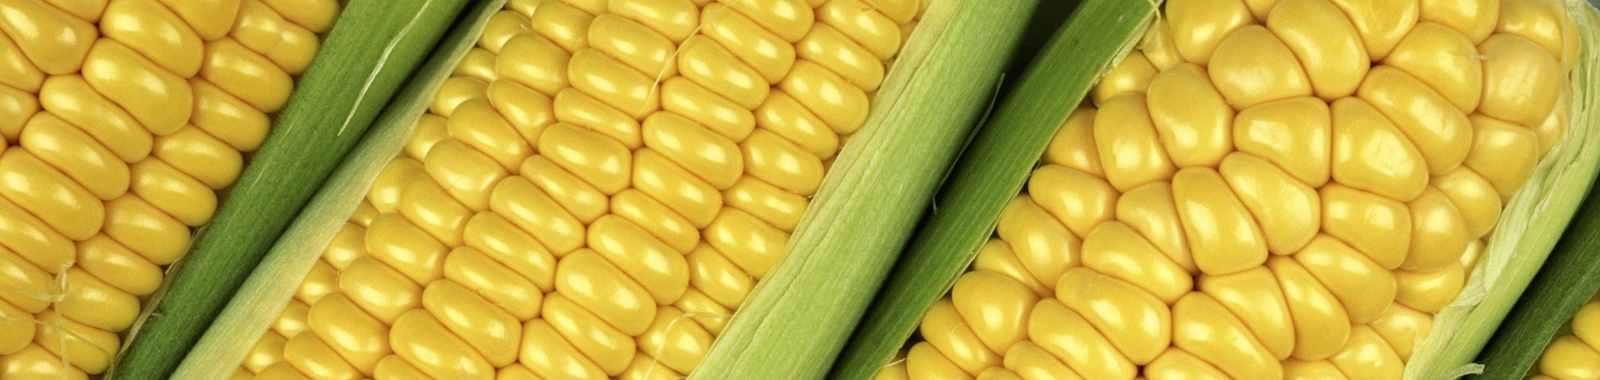 Zlepšení obsahu bílkovin a aminokyselin v kukuřici na zrno